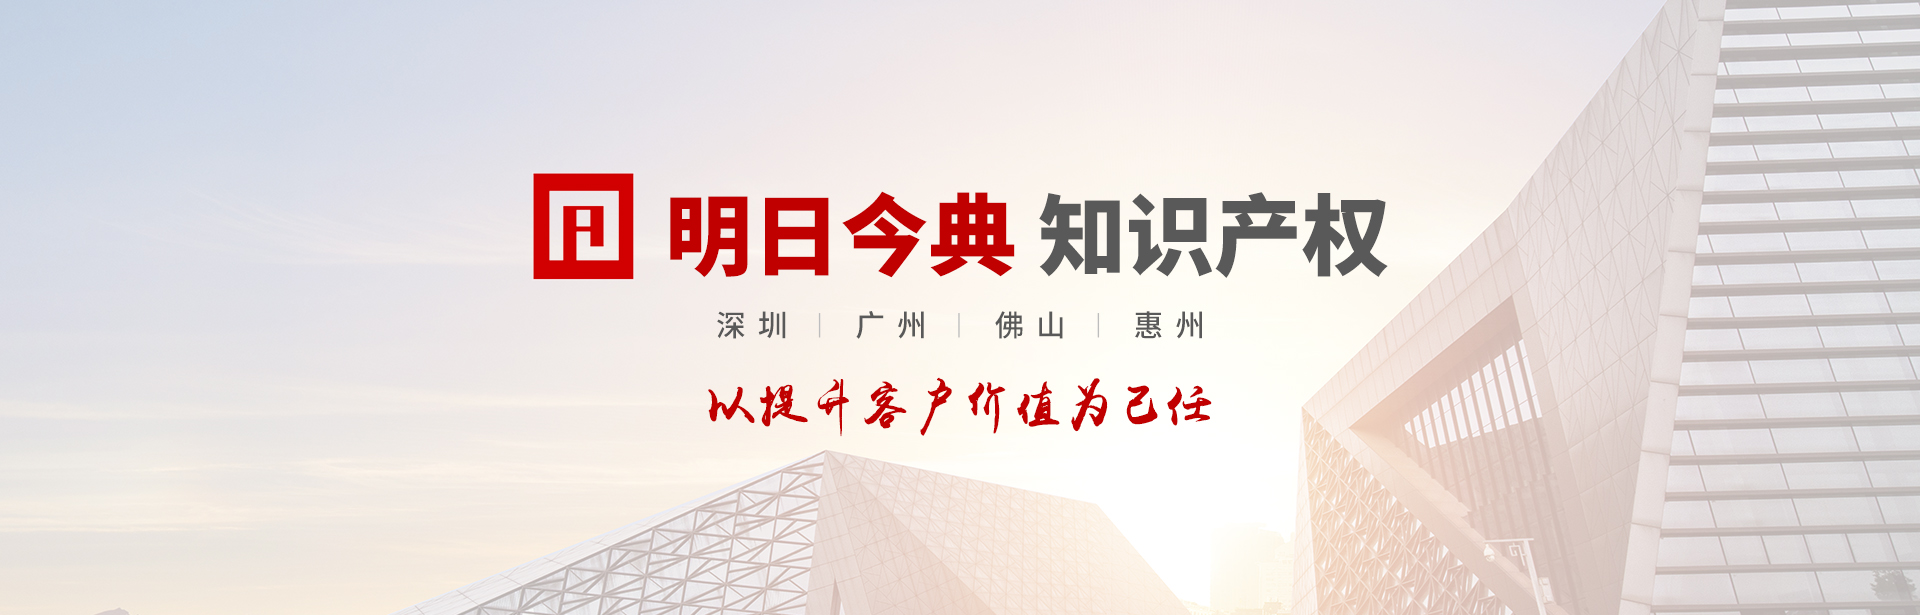 深圳市商务局关于开展2023年贸易型总部企业认定工作的通知